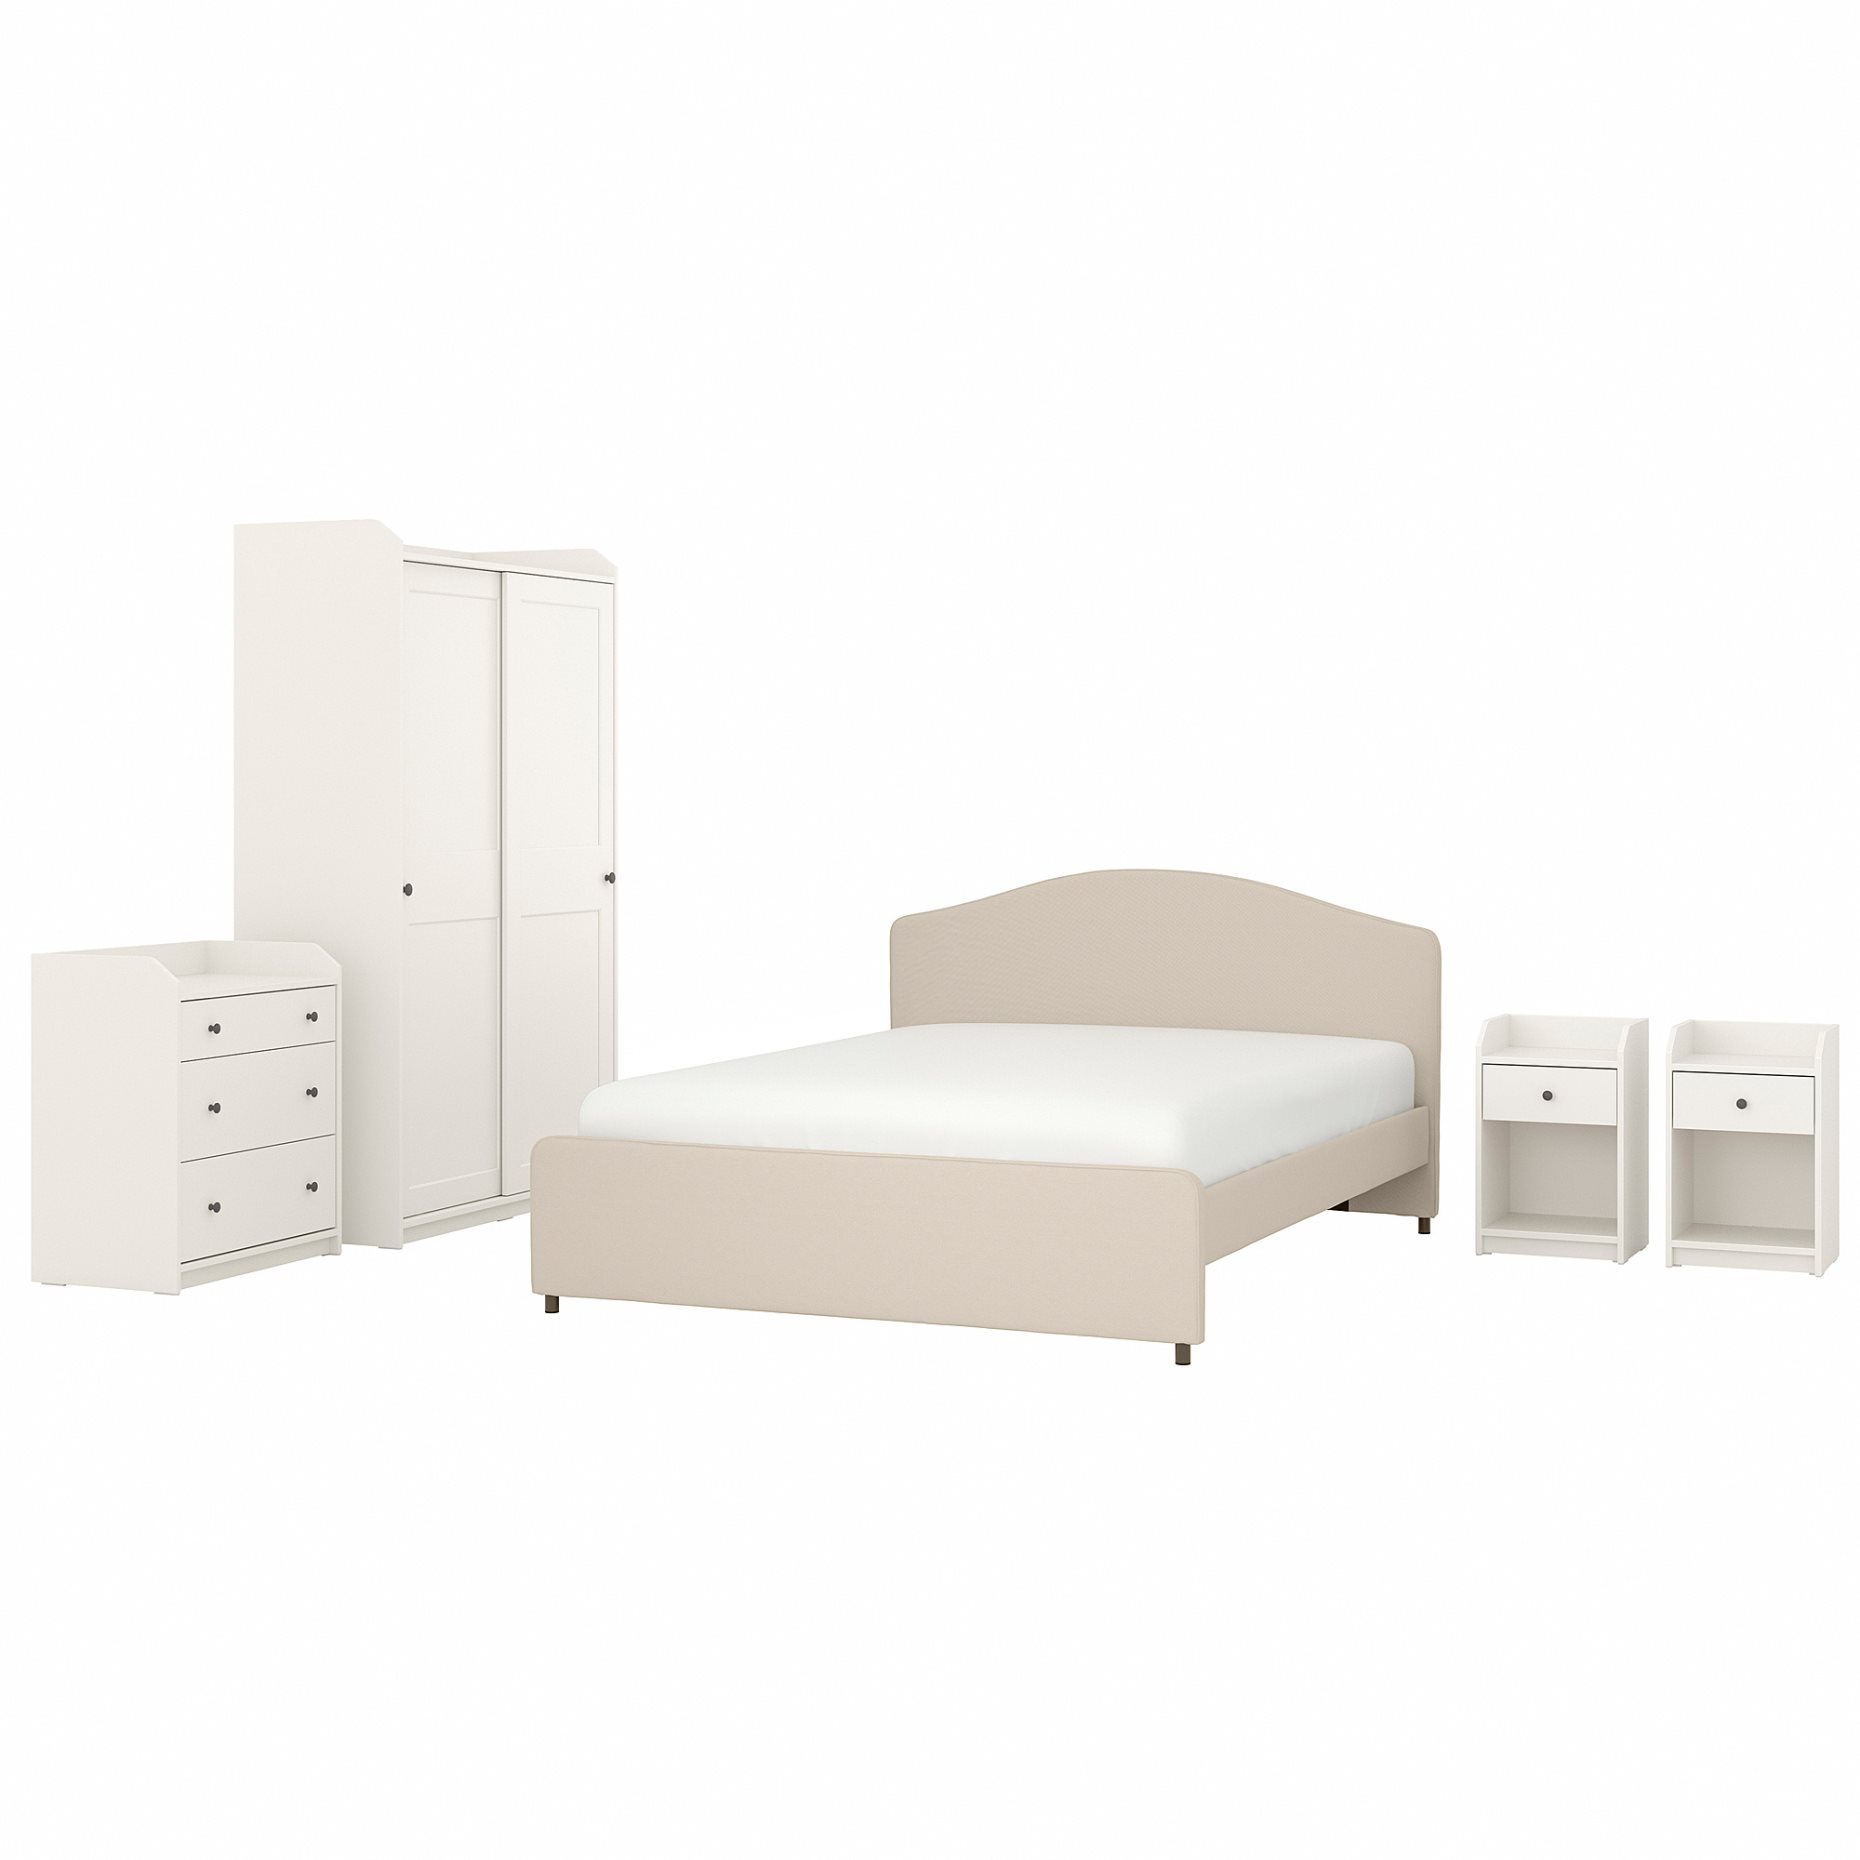 HAUGA, bedroom furniture/set of 5, 140x200 cm, 894.860.17